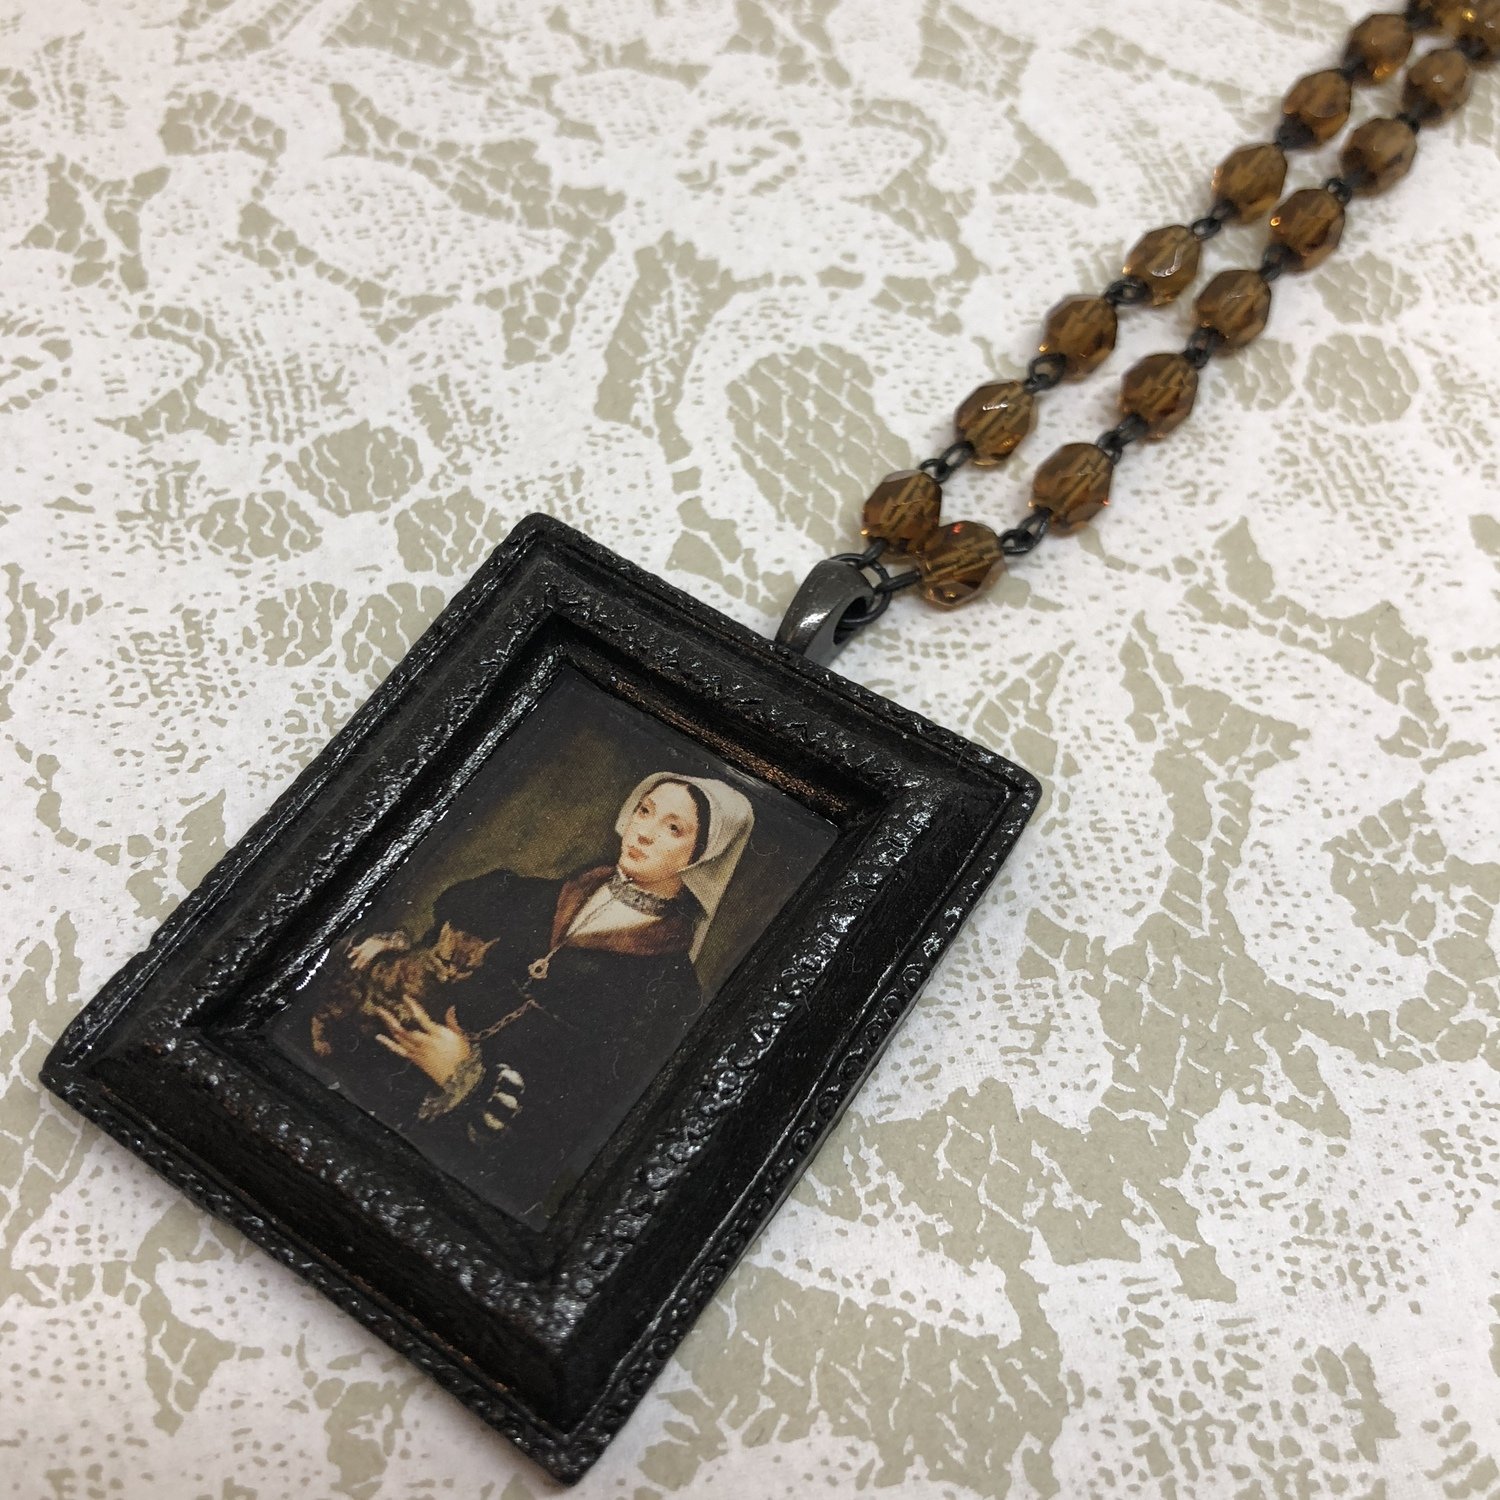 portrait frame necklace (cat lady)